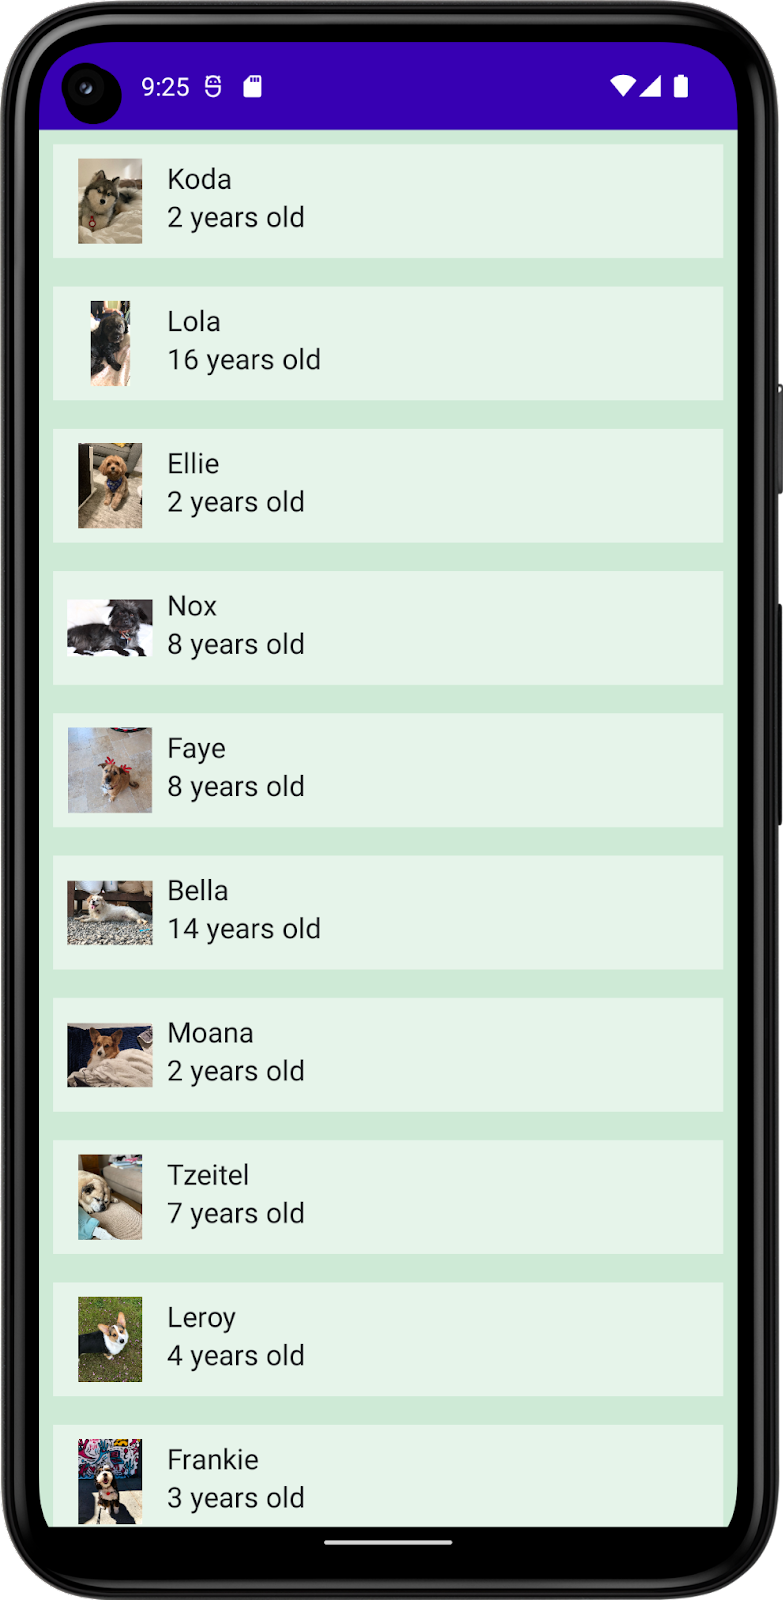 この画像は、犬の名前、写真、年齢を含むリストを表示する DefaultPreview のアプリを示しています。このアプリには、アプリの背景色とリストアイテムの背景色、テキストの色が含まれています。